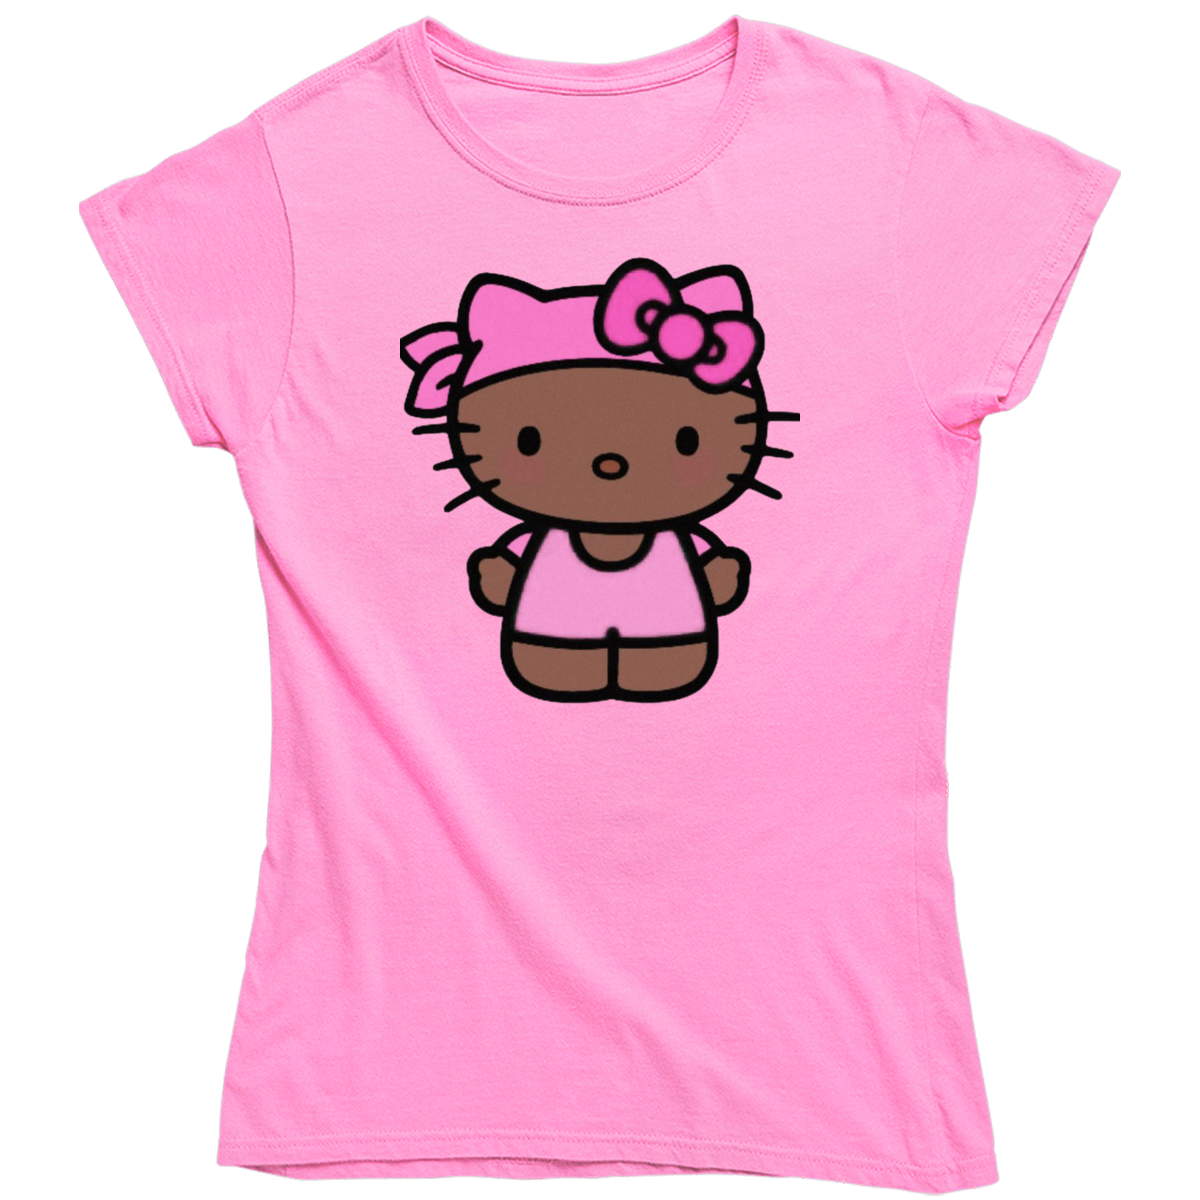 アフリカ系アメリカ人のキティがピンクのバンダナにインスパイアされたレディース T シャツ